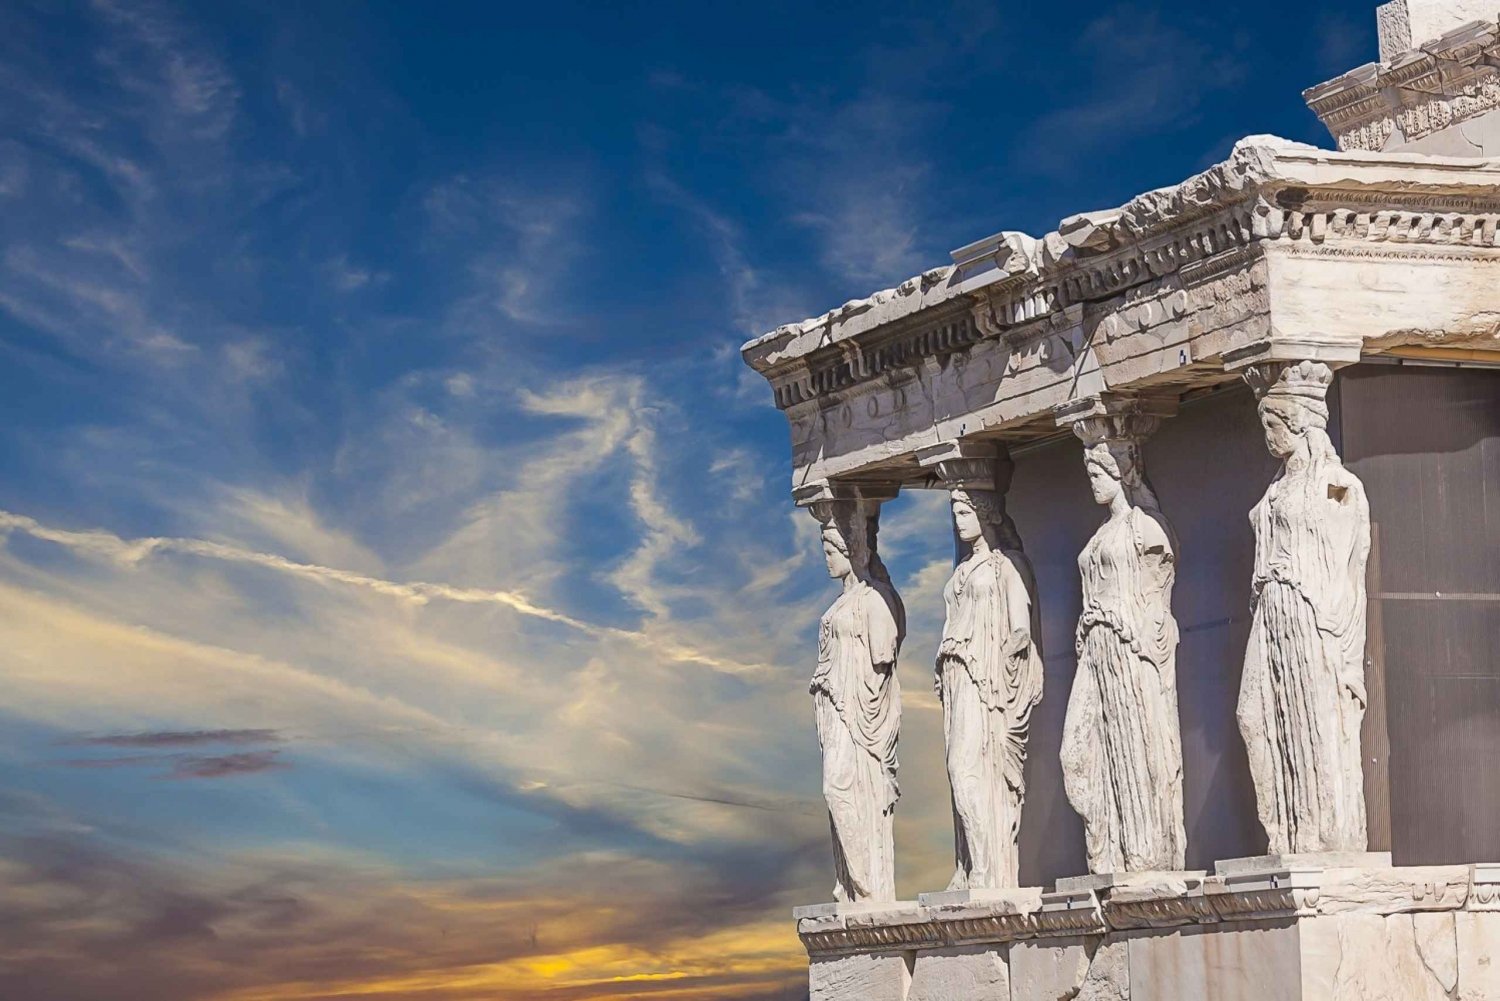 Aten: Entrébiljett till Akropolis med valfri audioguide